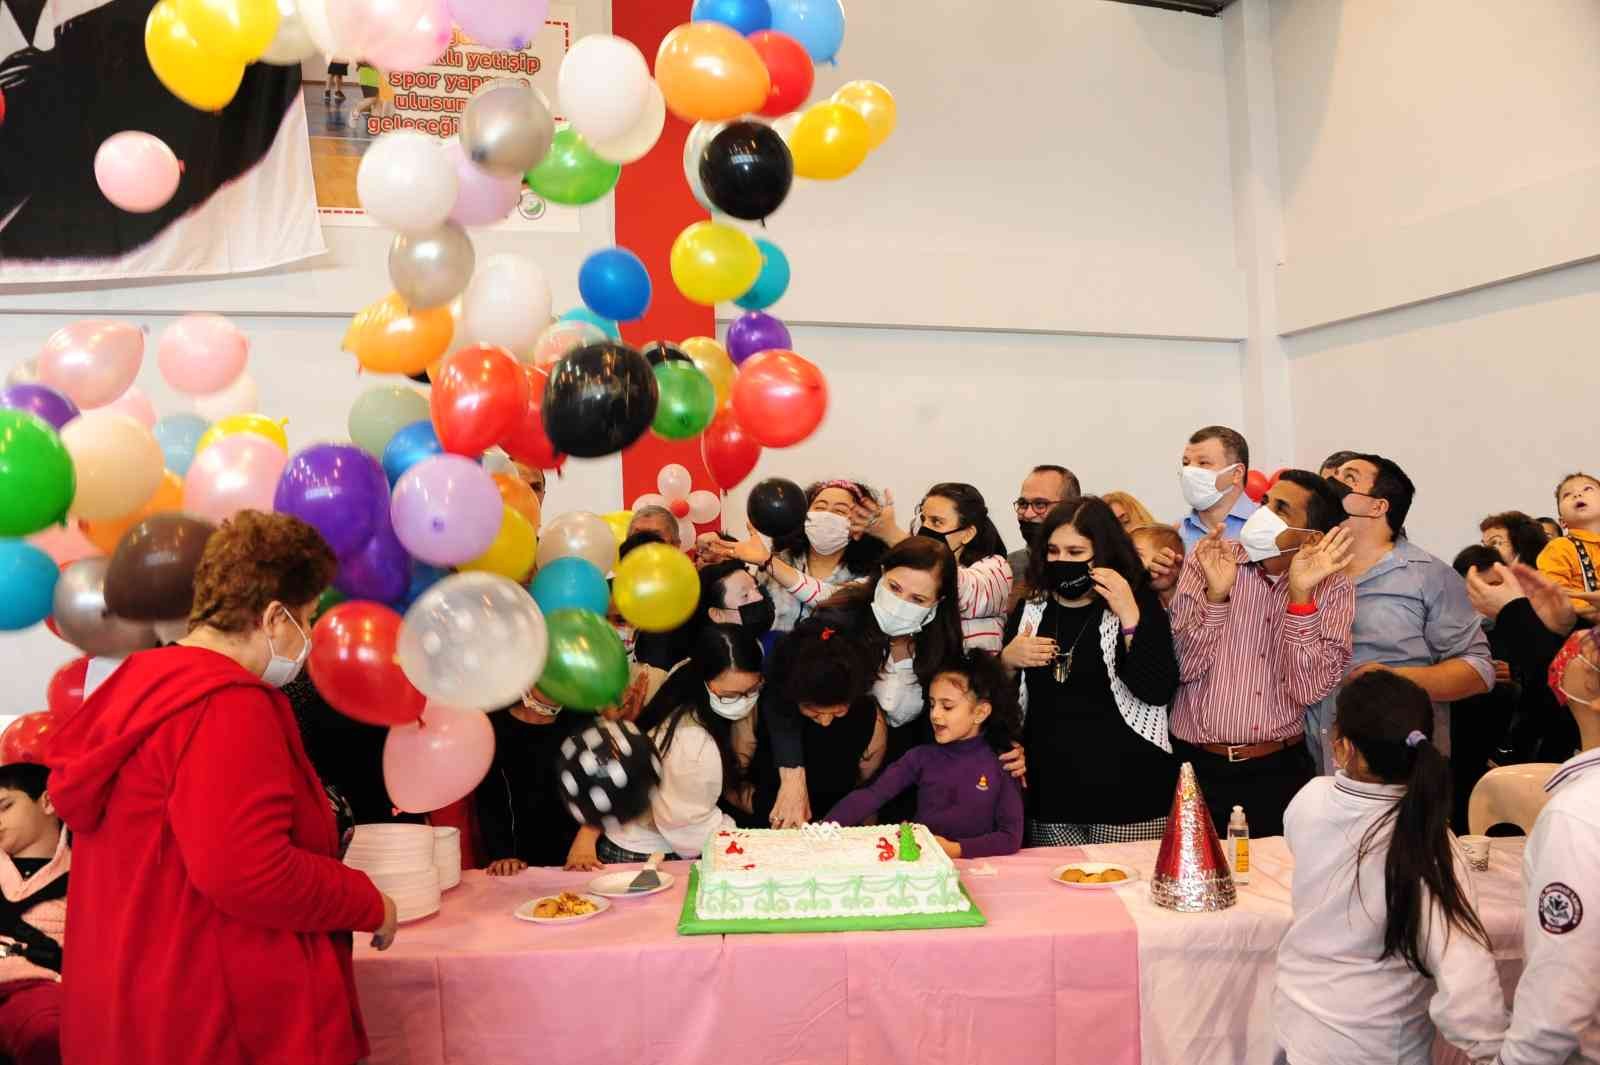 Balçova’daki yeni yıl partisinde engelli gençler doyasıya eğlendi #izmir